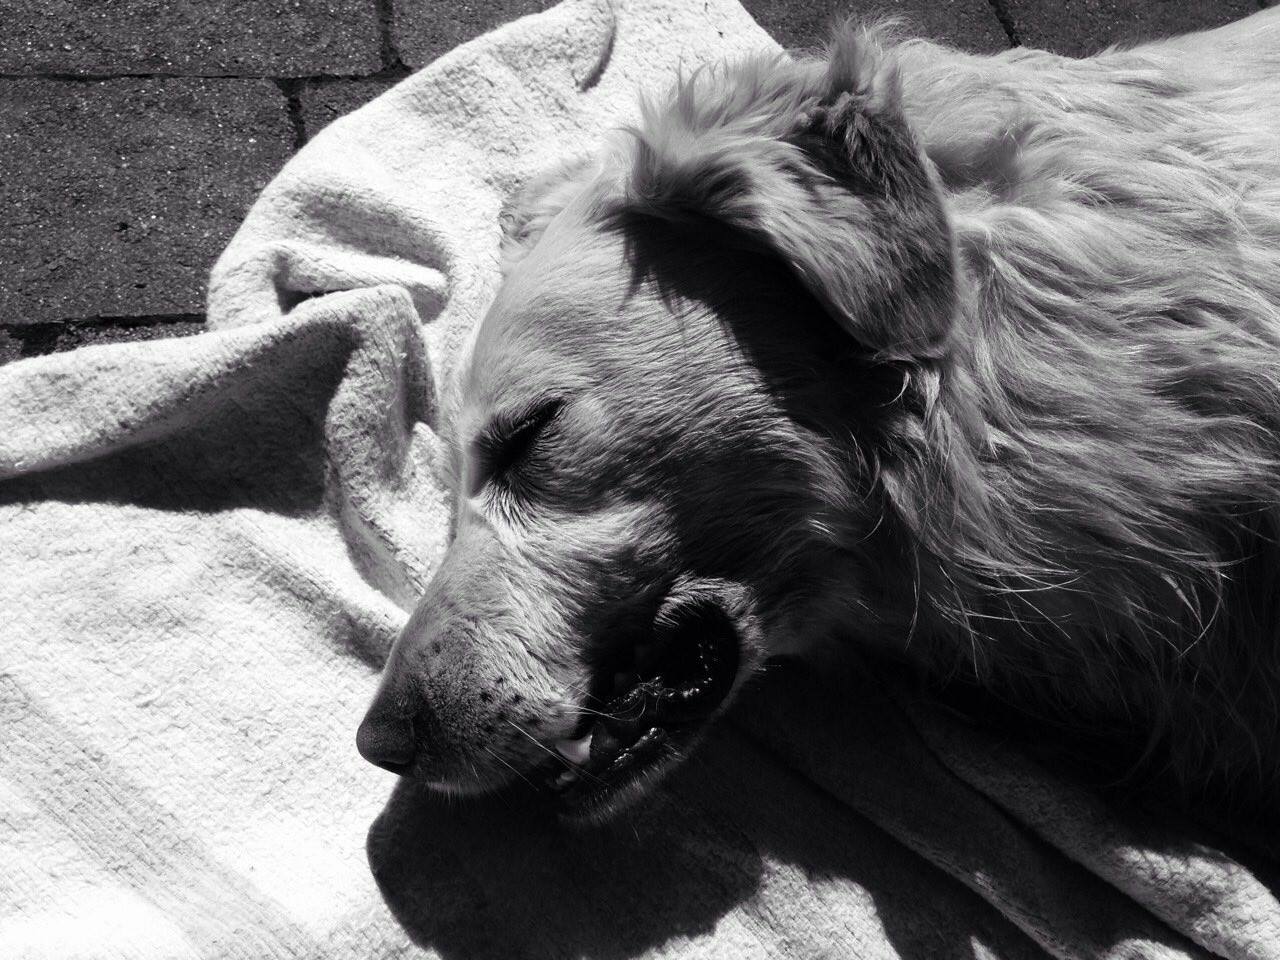 Днями мукачівські активісти повідомили про масове отруєння собак у дворогосподарствах міста.